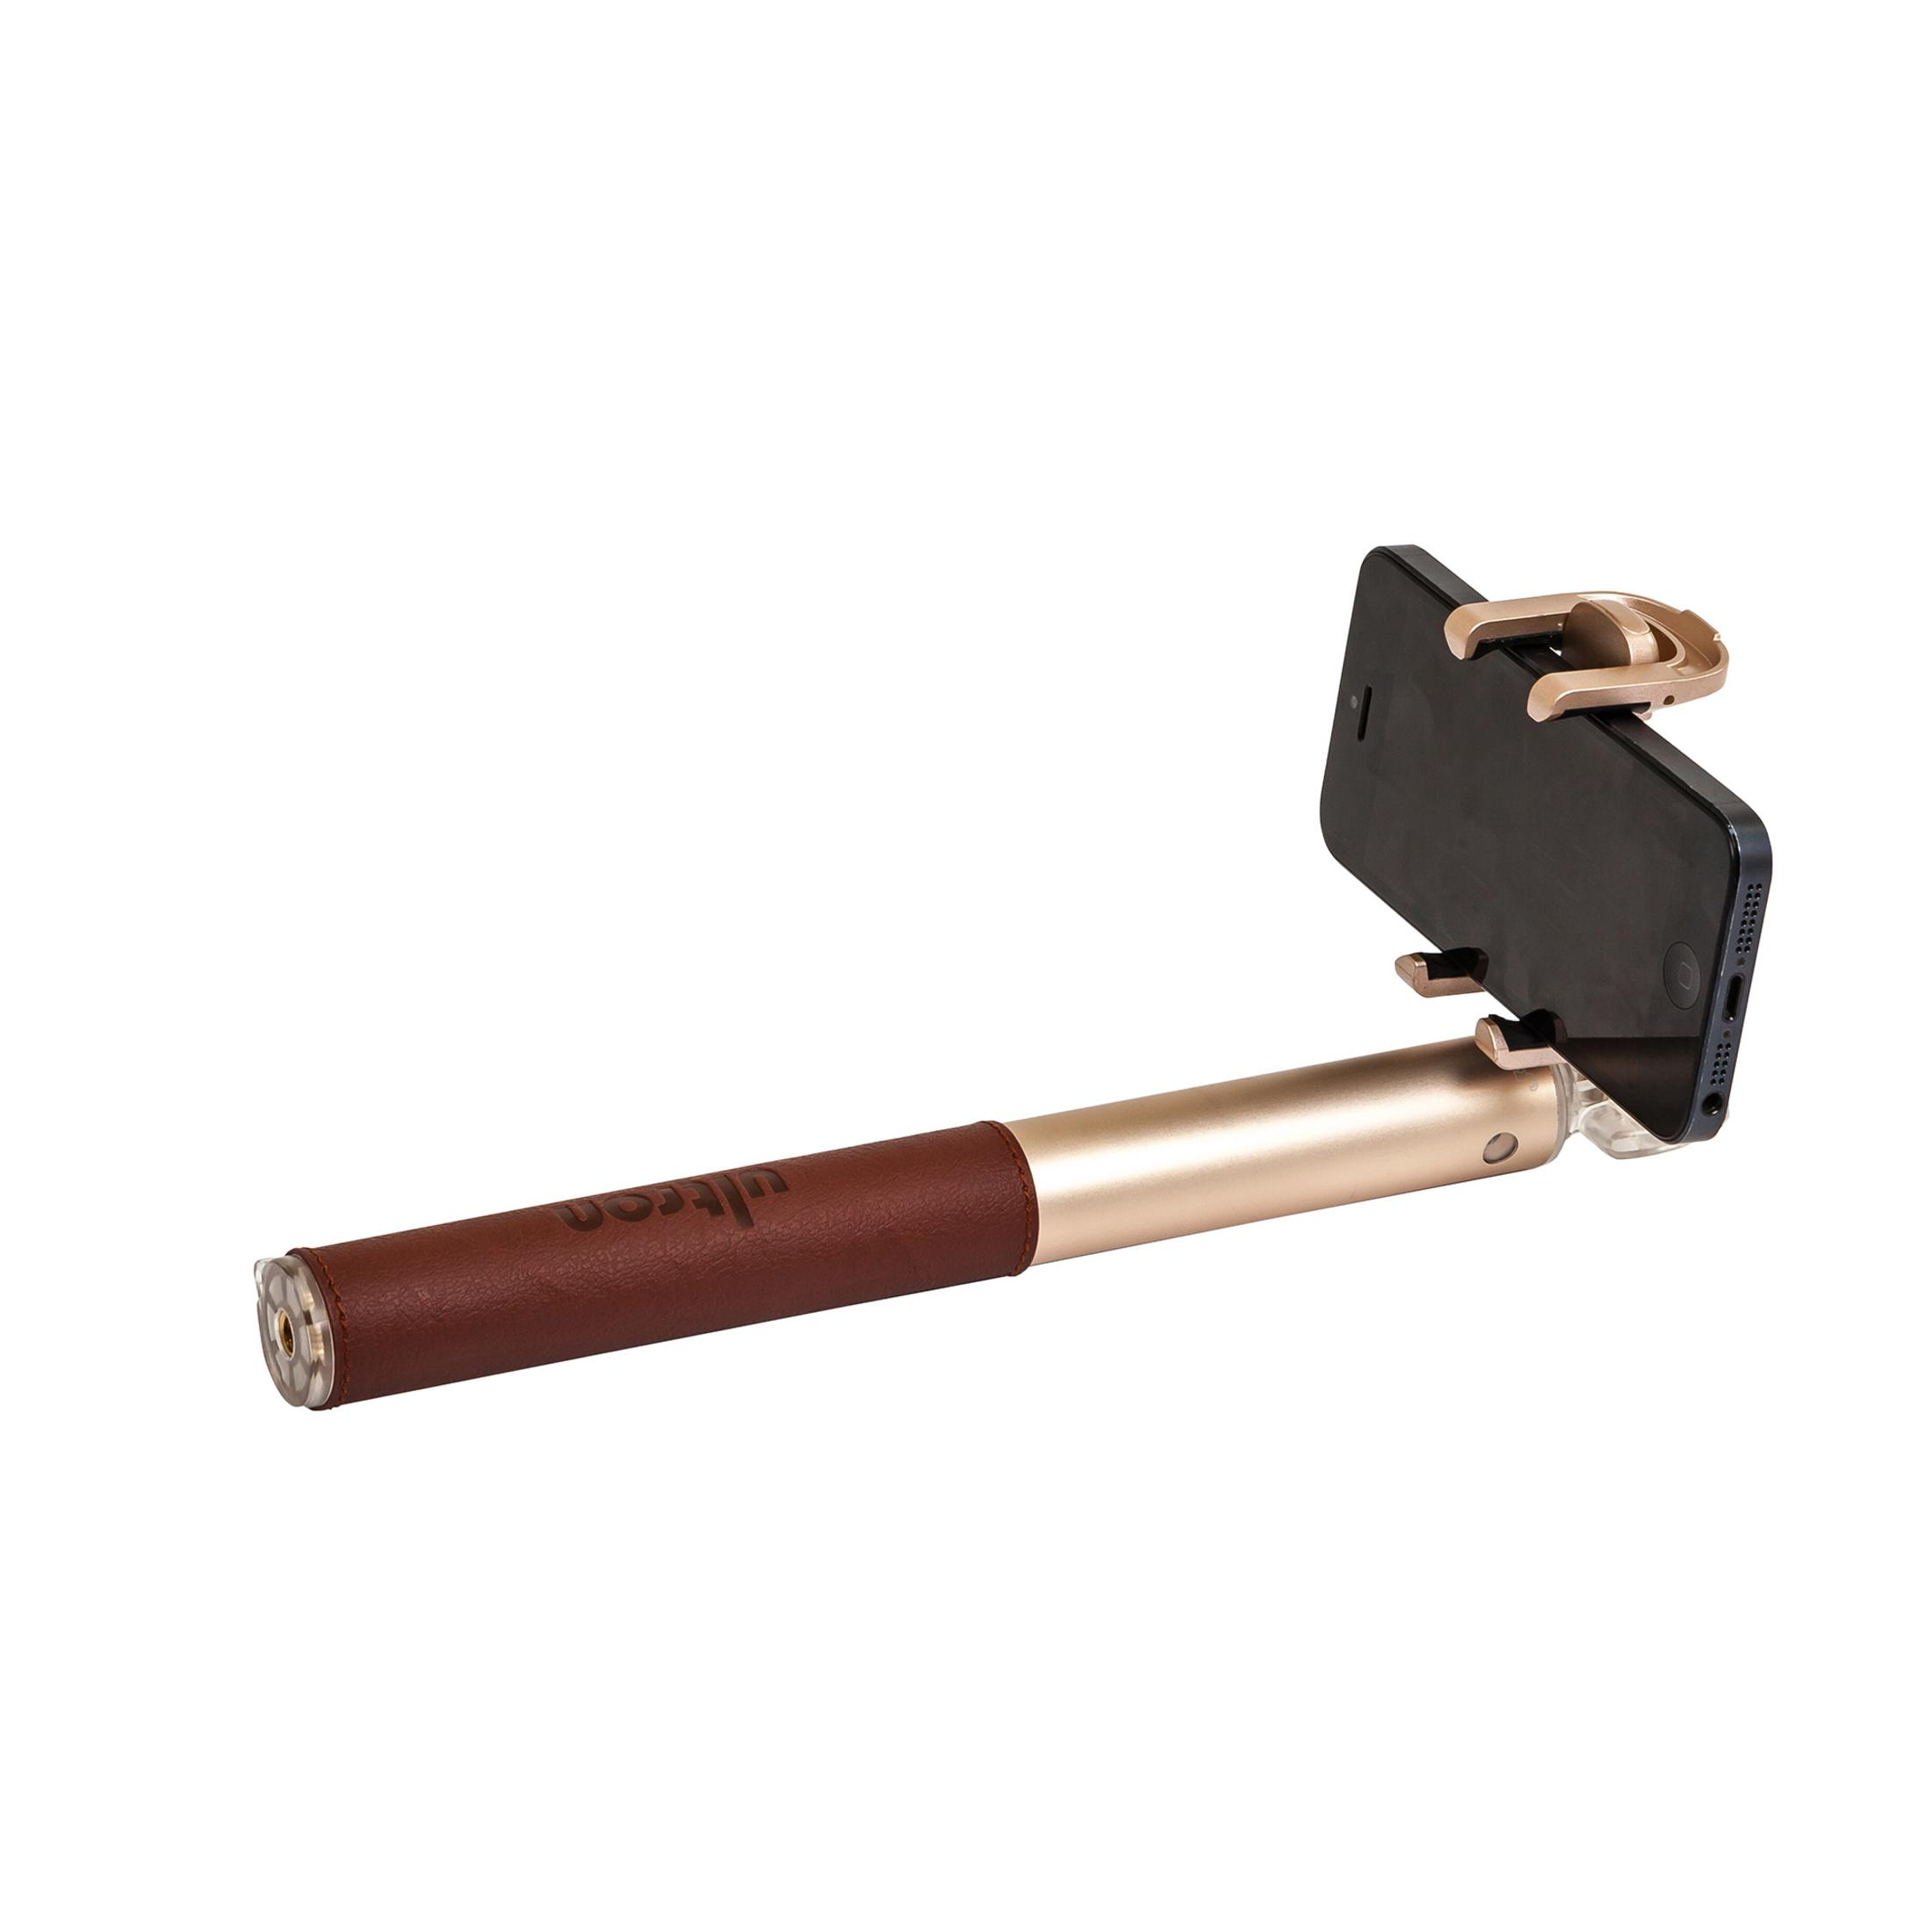 ULTRON 185948 SELFIE Stick, BT DELUXE Gold Selfie